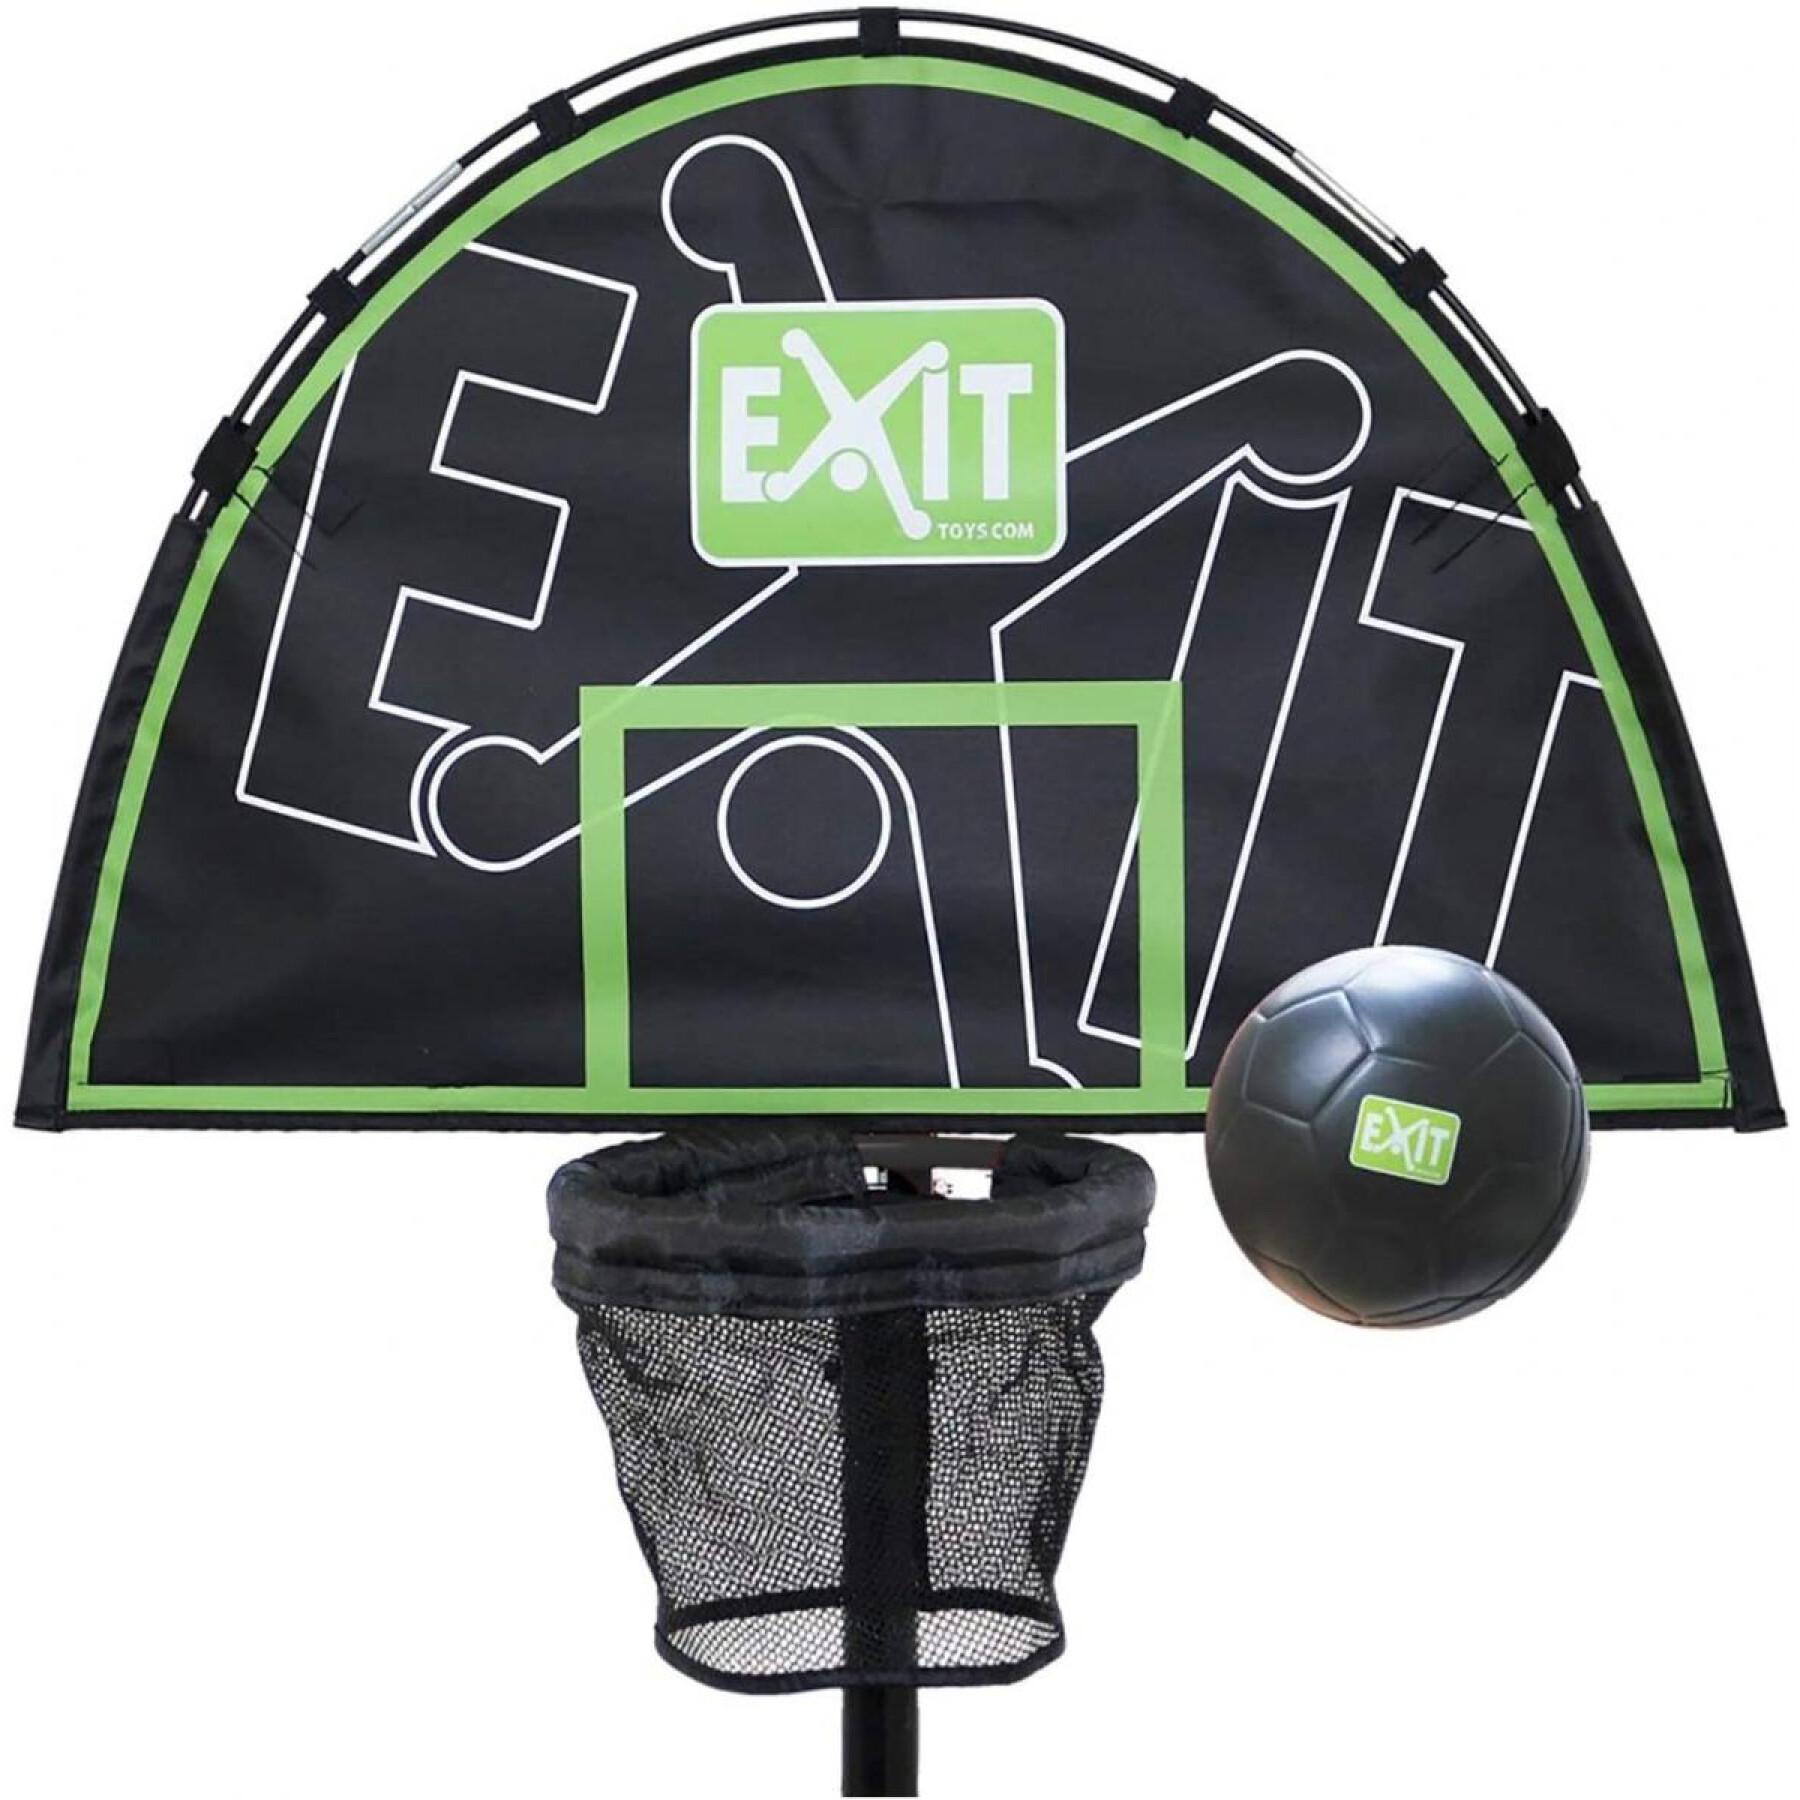 Basketballkorb für Trampoline Exit Toys